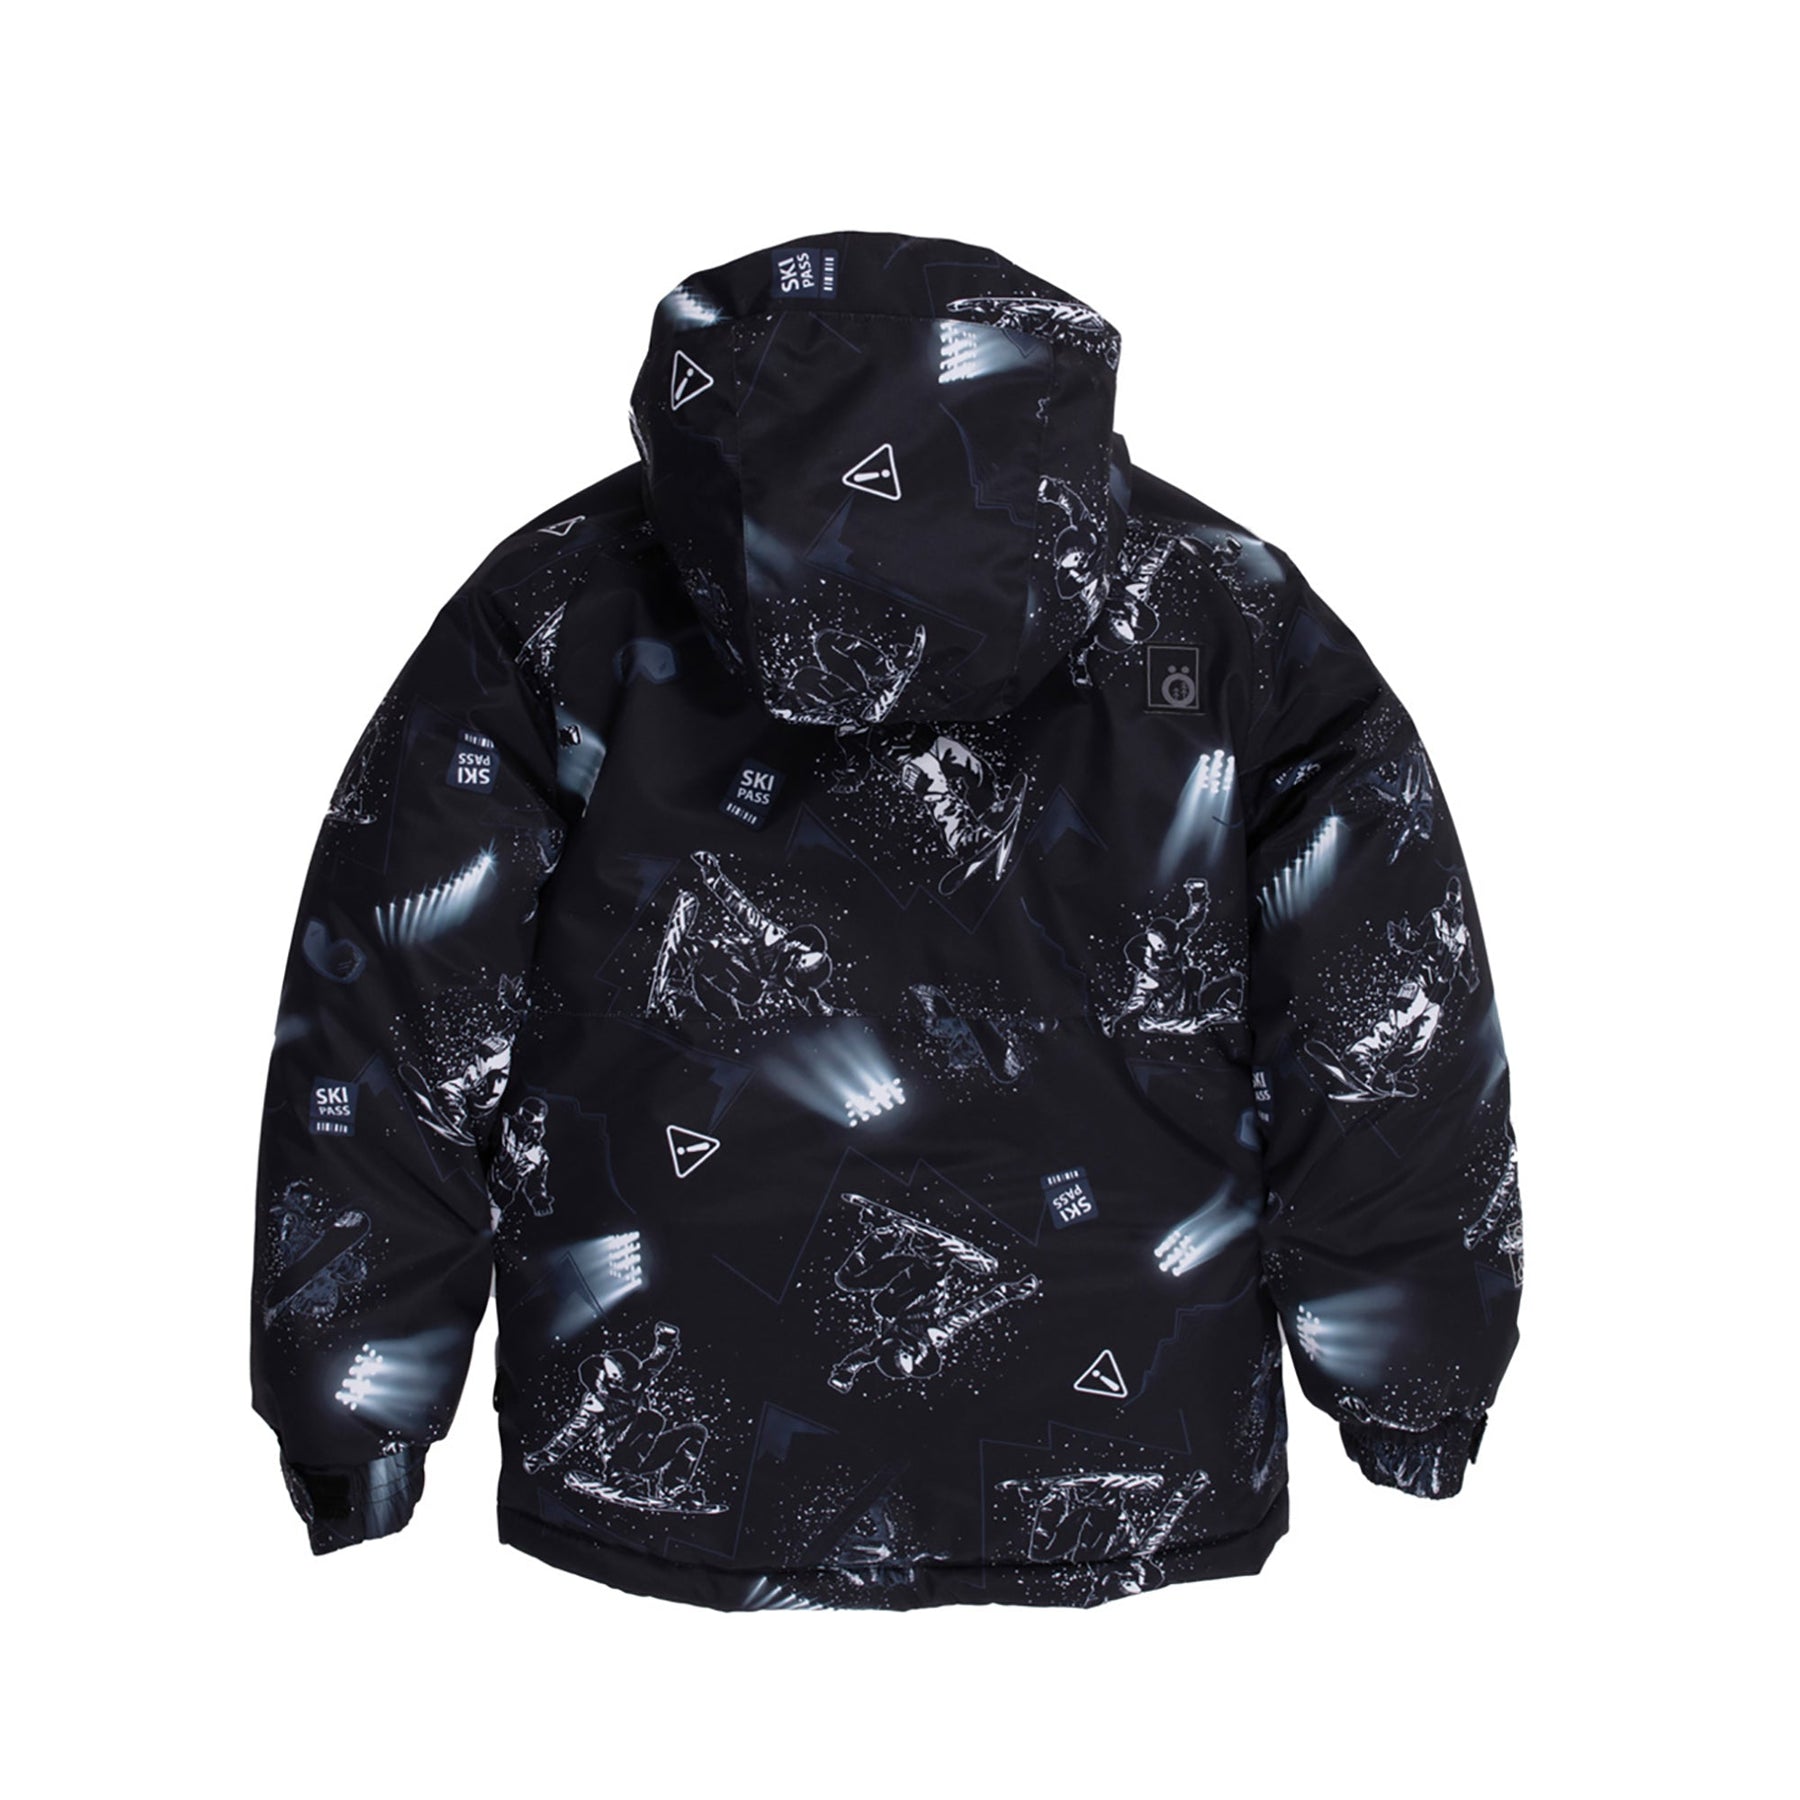 Manteau d'hiver pour enfant garçon par Snö | Thomas F23M327 Noir | Boutique Flos, vêtements mode pour bébés et enfants